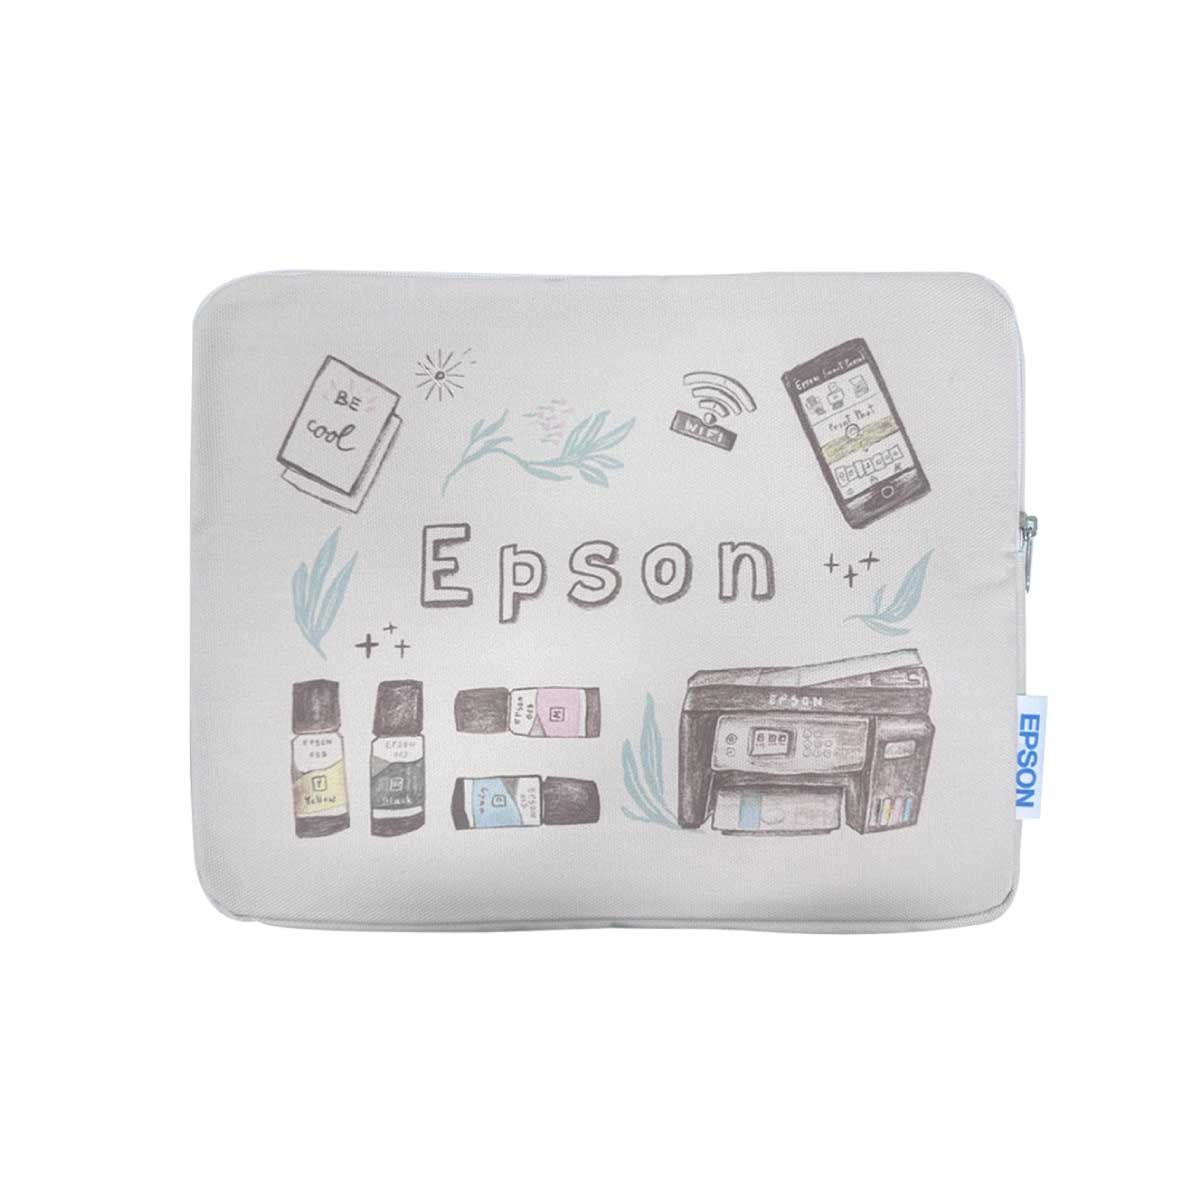 กระเป๋า SOFTCASE EPSON สำหรับใส่ Notebook, iPad